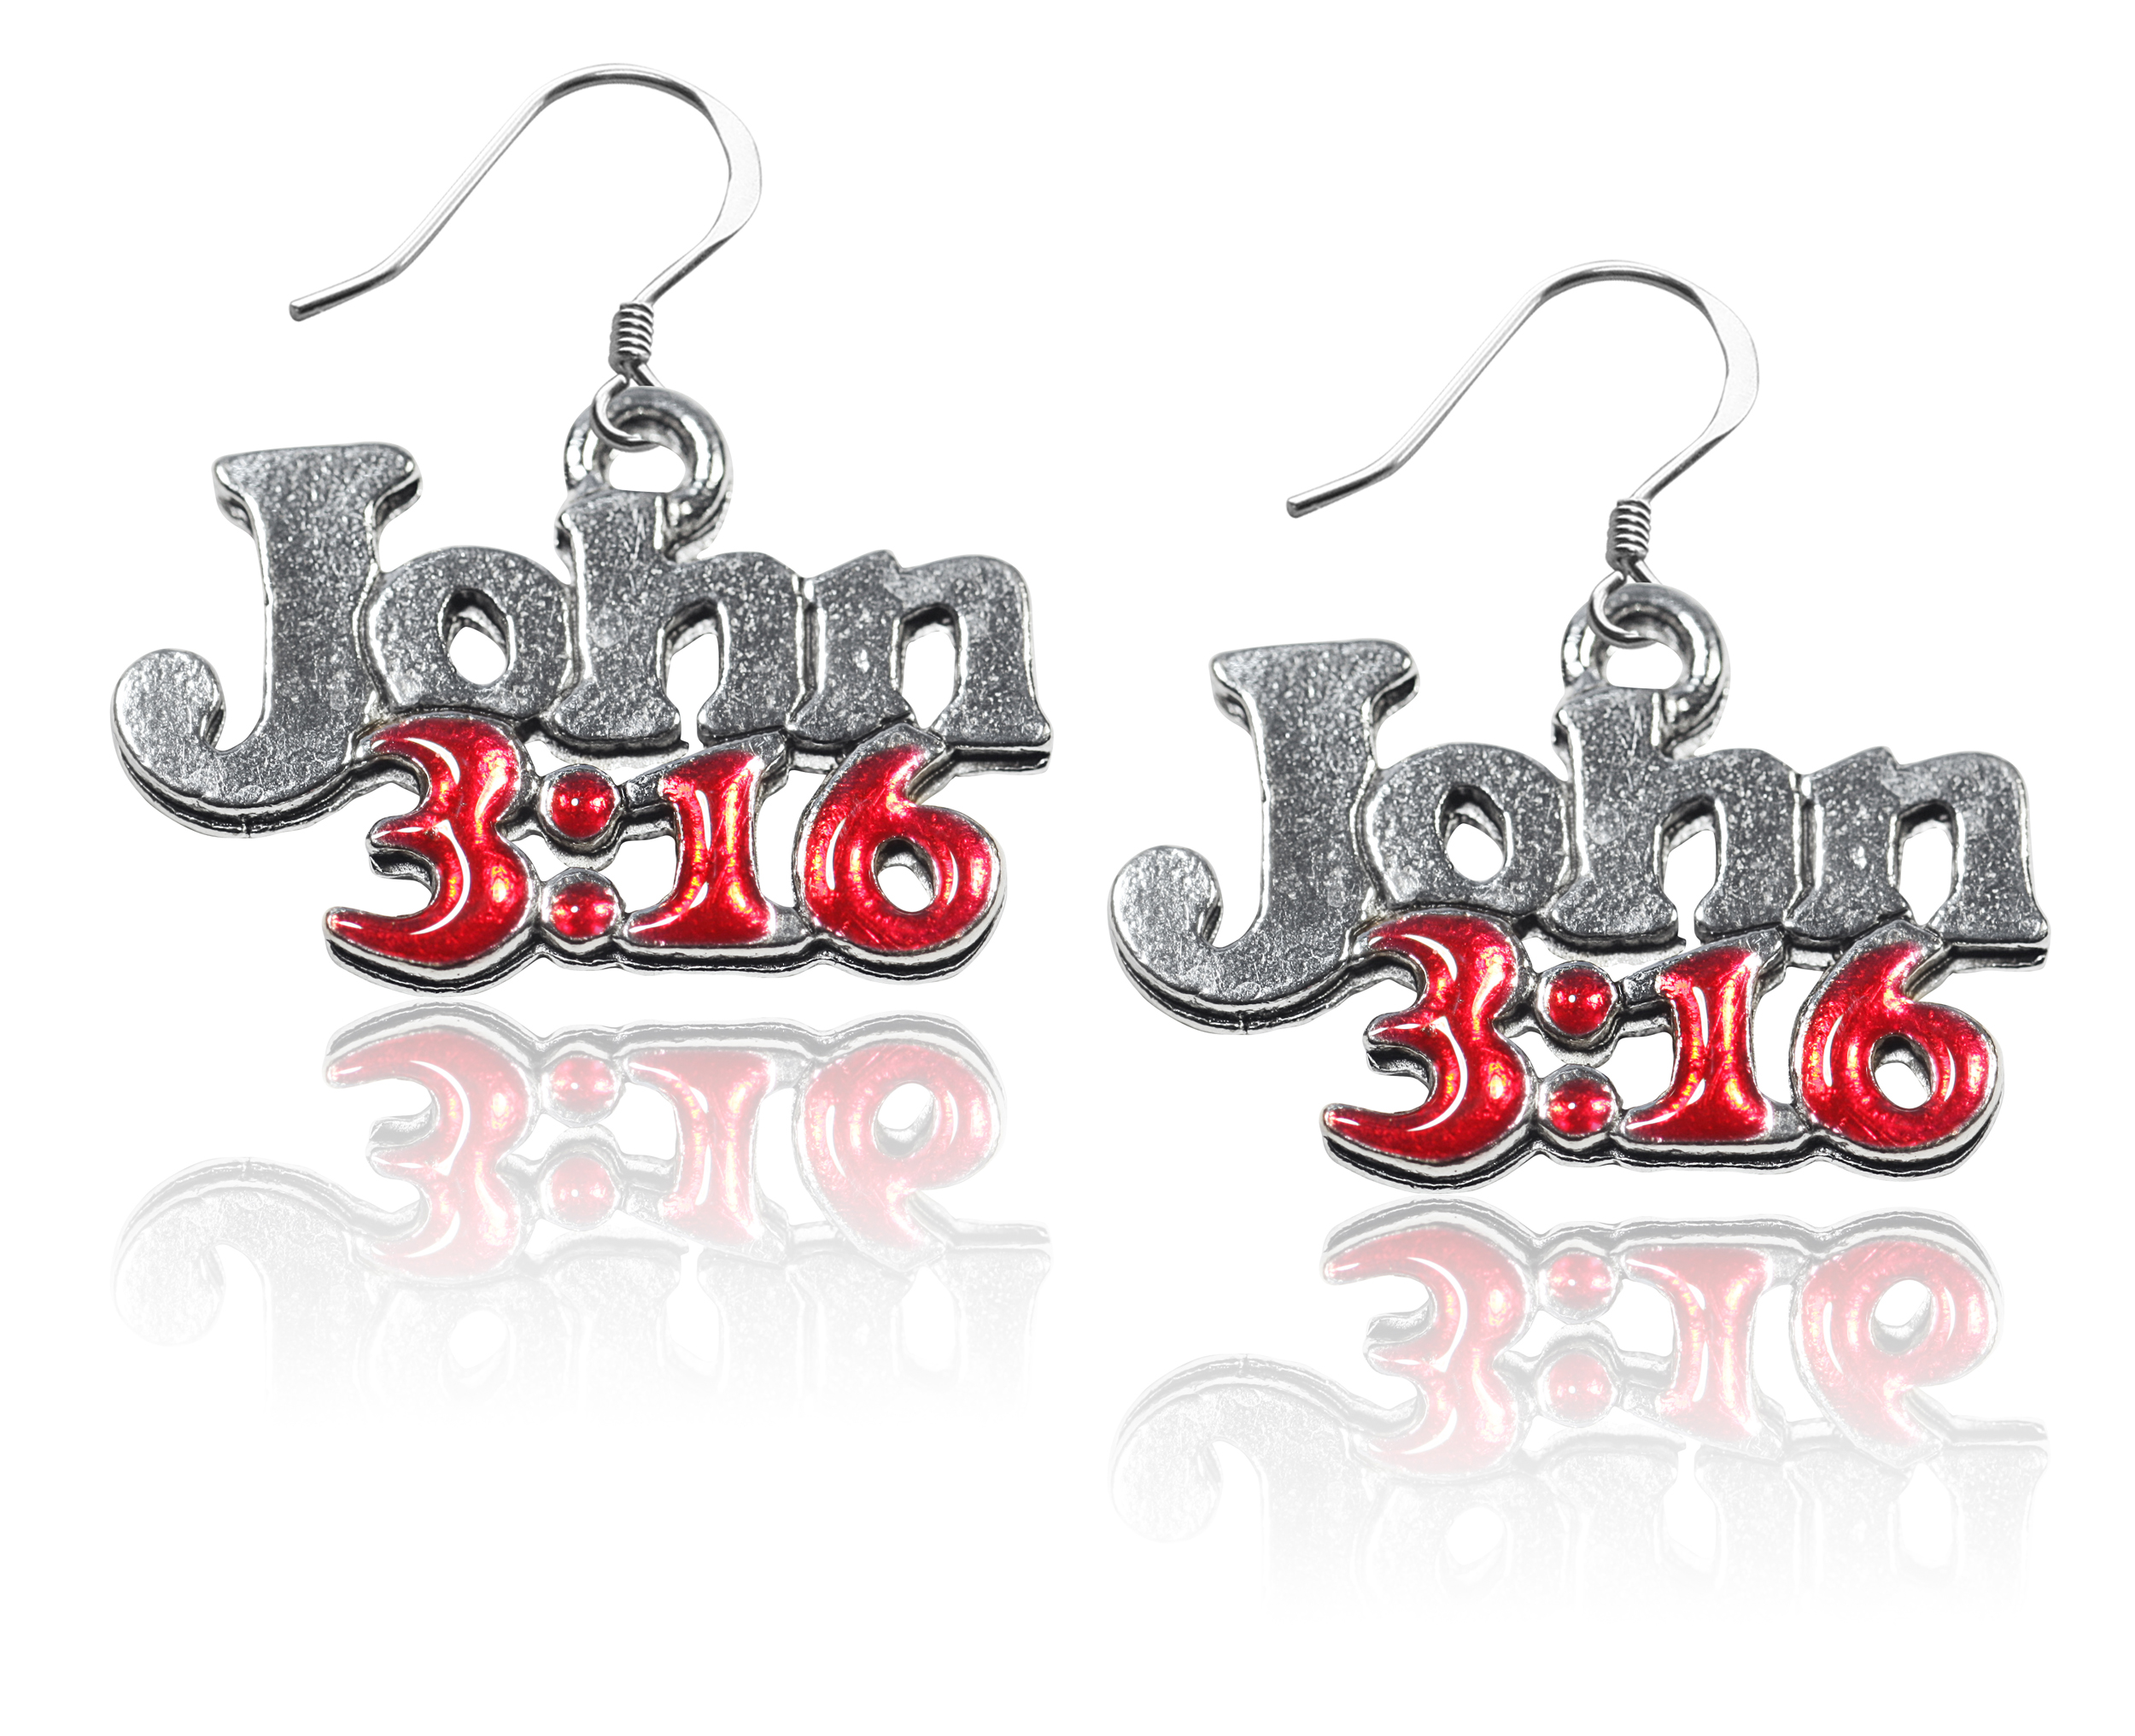 John 3:16 Charm Earrings in Silver